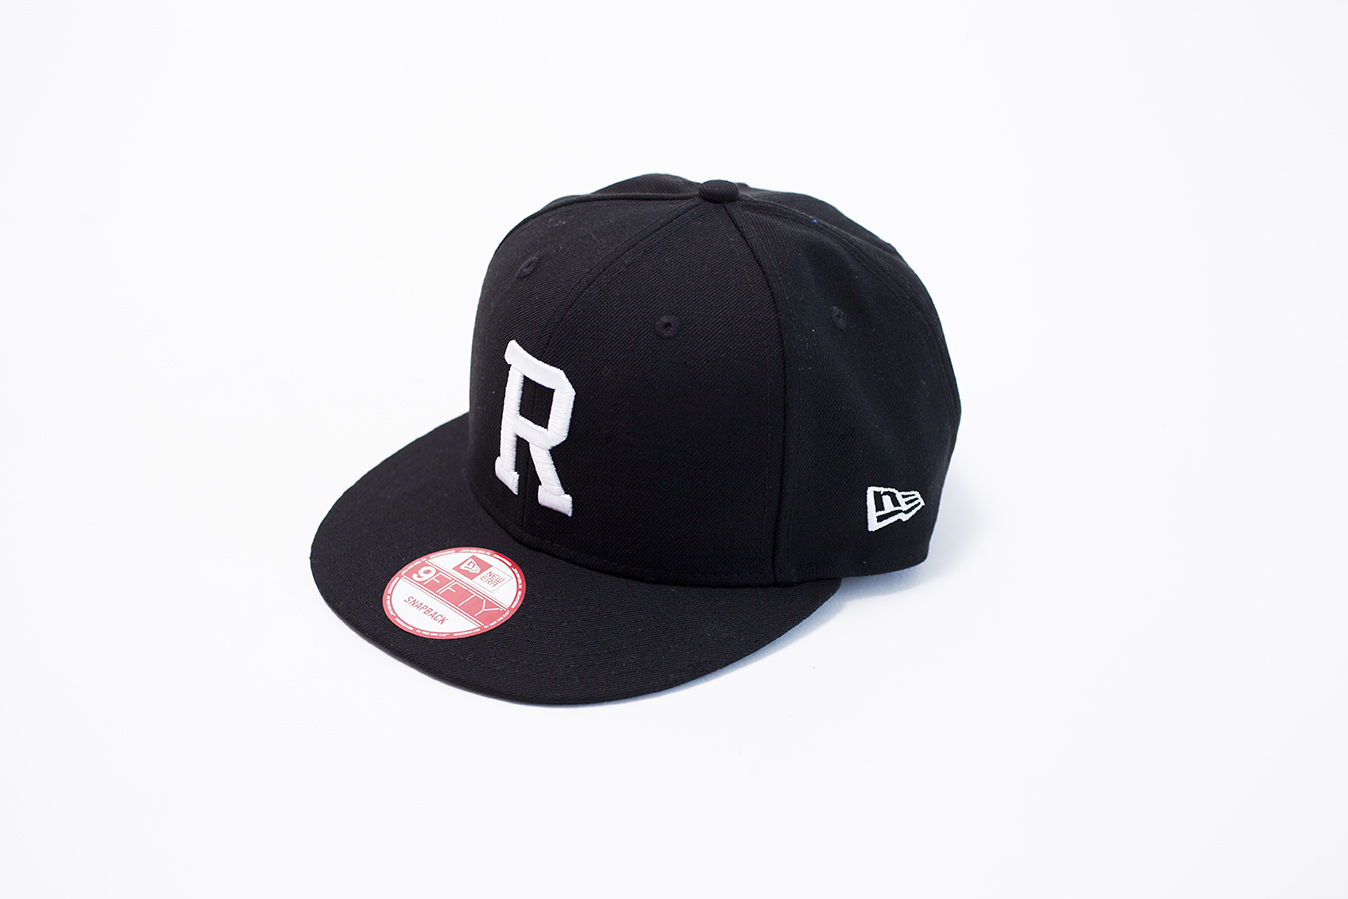 New Era for RHC
Snapback “R”Cap